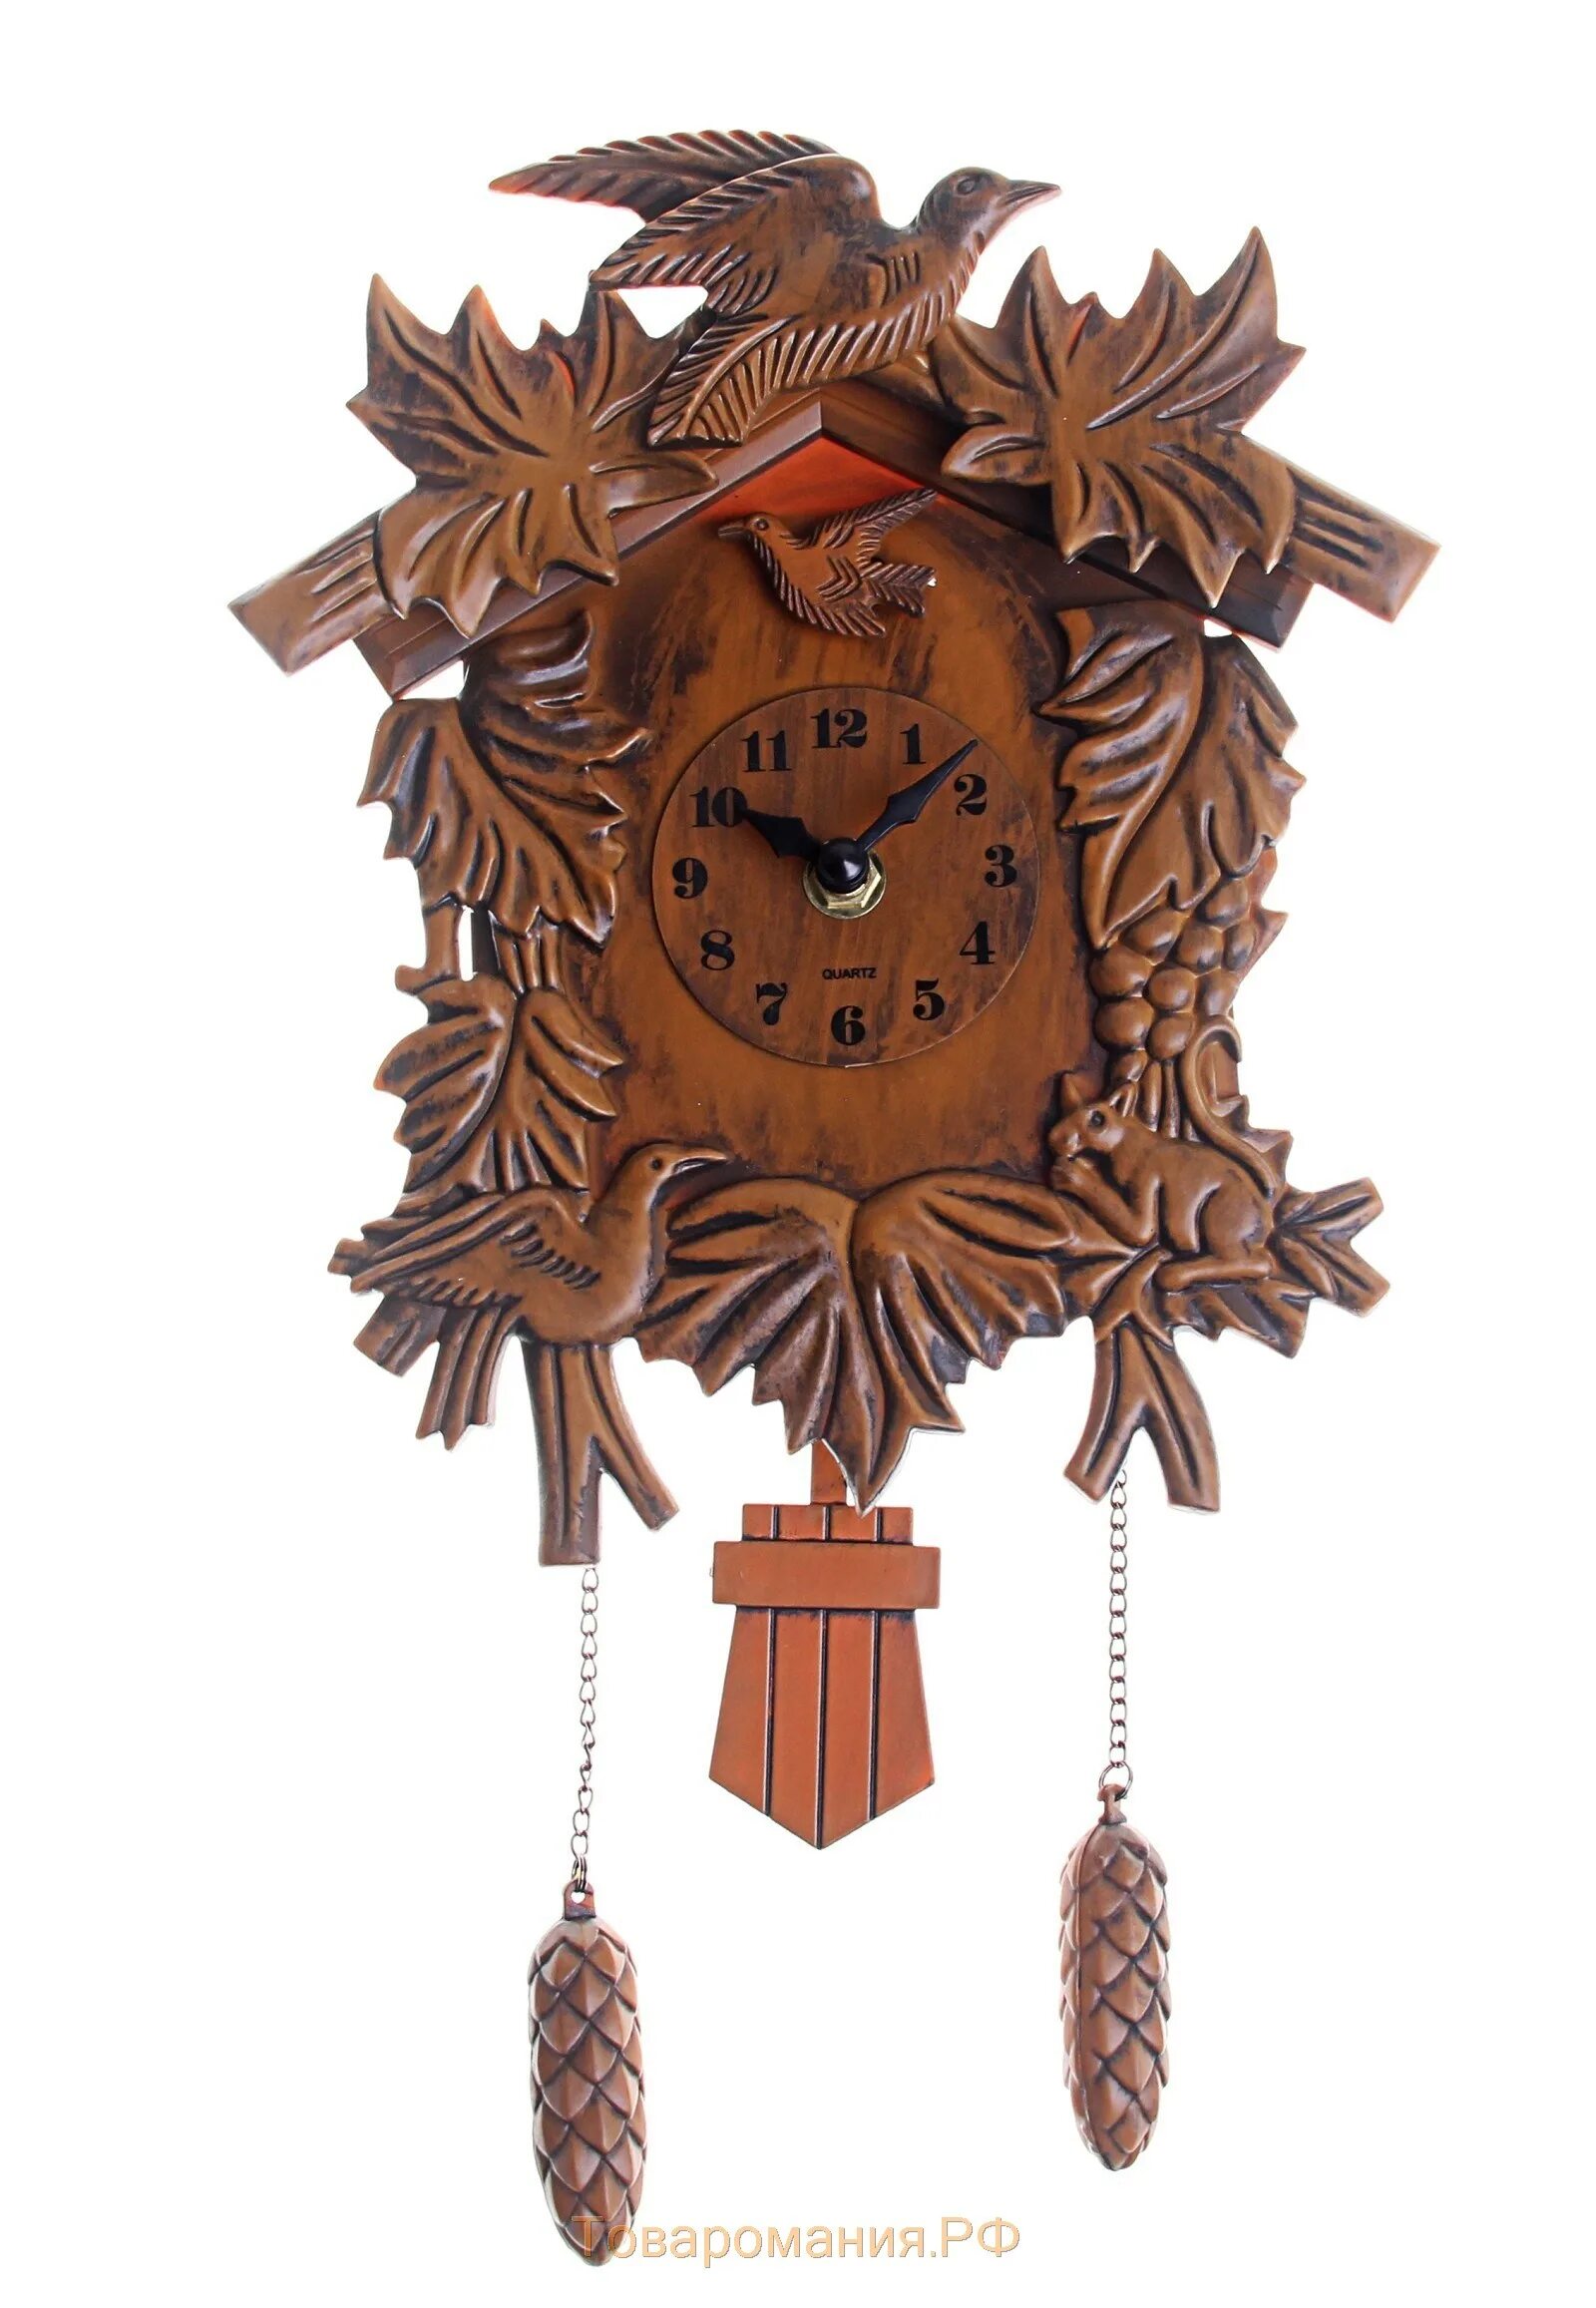 Часы с кукушкой k6045. Часы с кукушкой Прокофьева. Часы ходики с кукушкой с гирями и маятником. Часы с кукушкой 19 век.